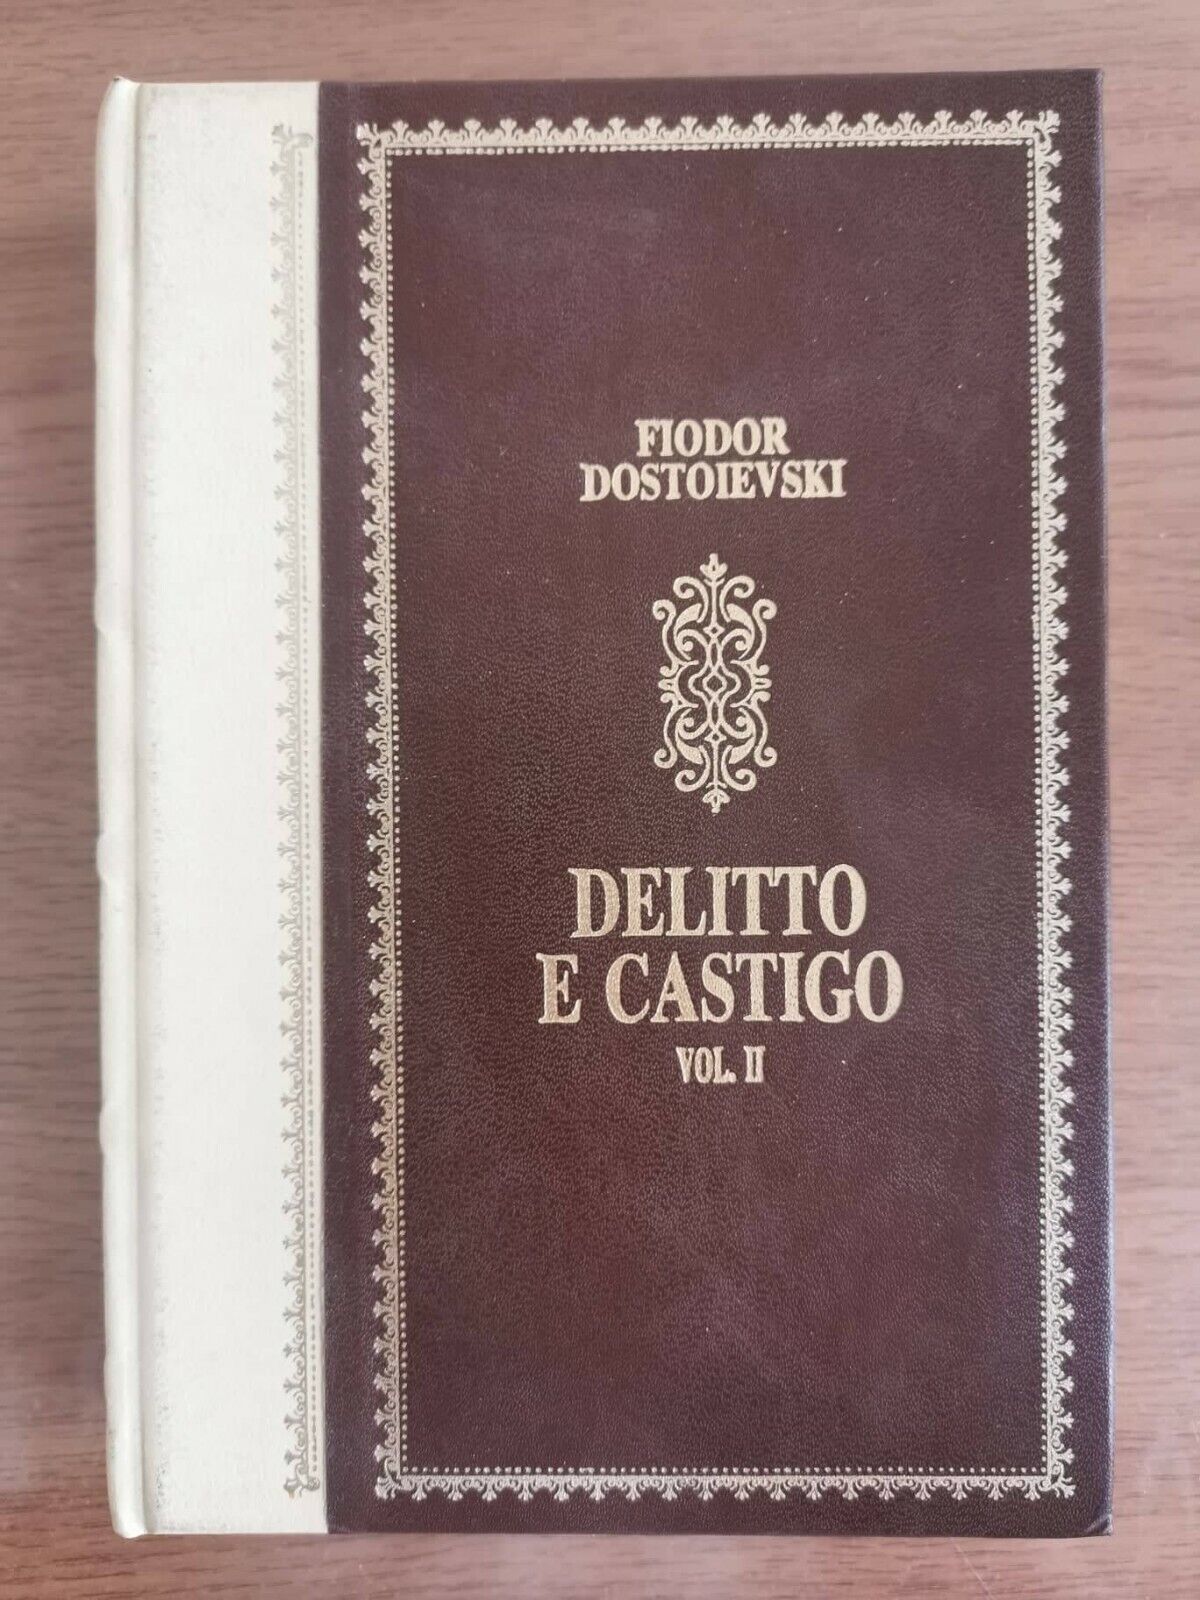 Delitto e castigo vol. II - F. Dostoievski - Peruzzo editore - 1980 - AR